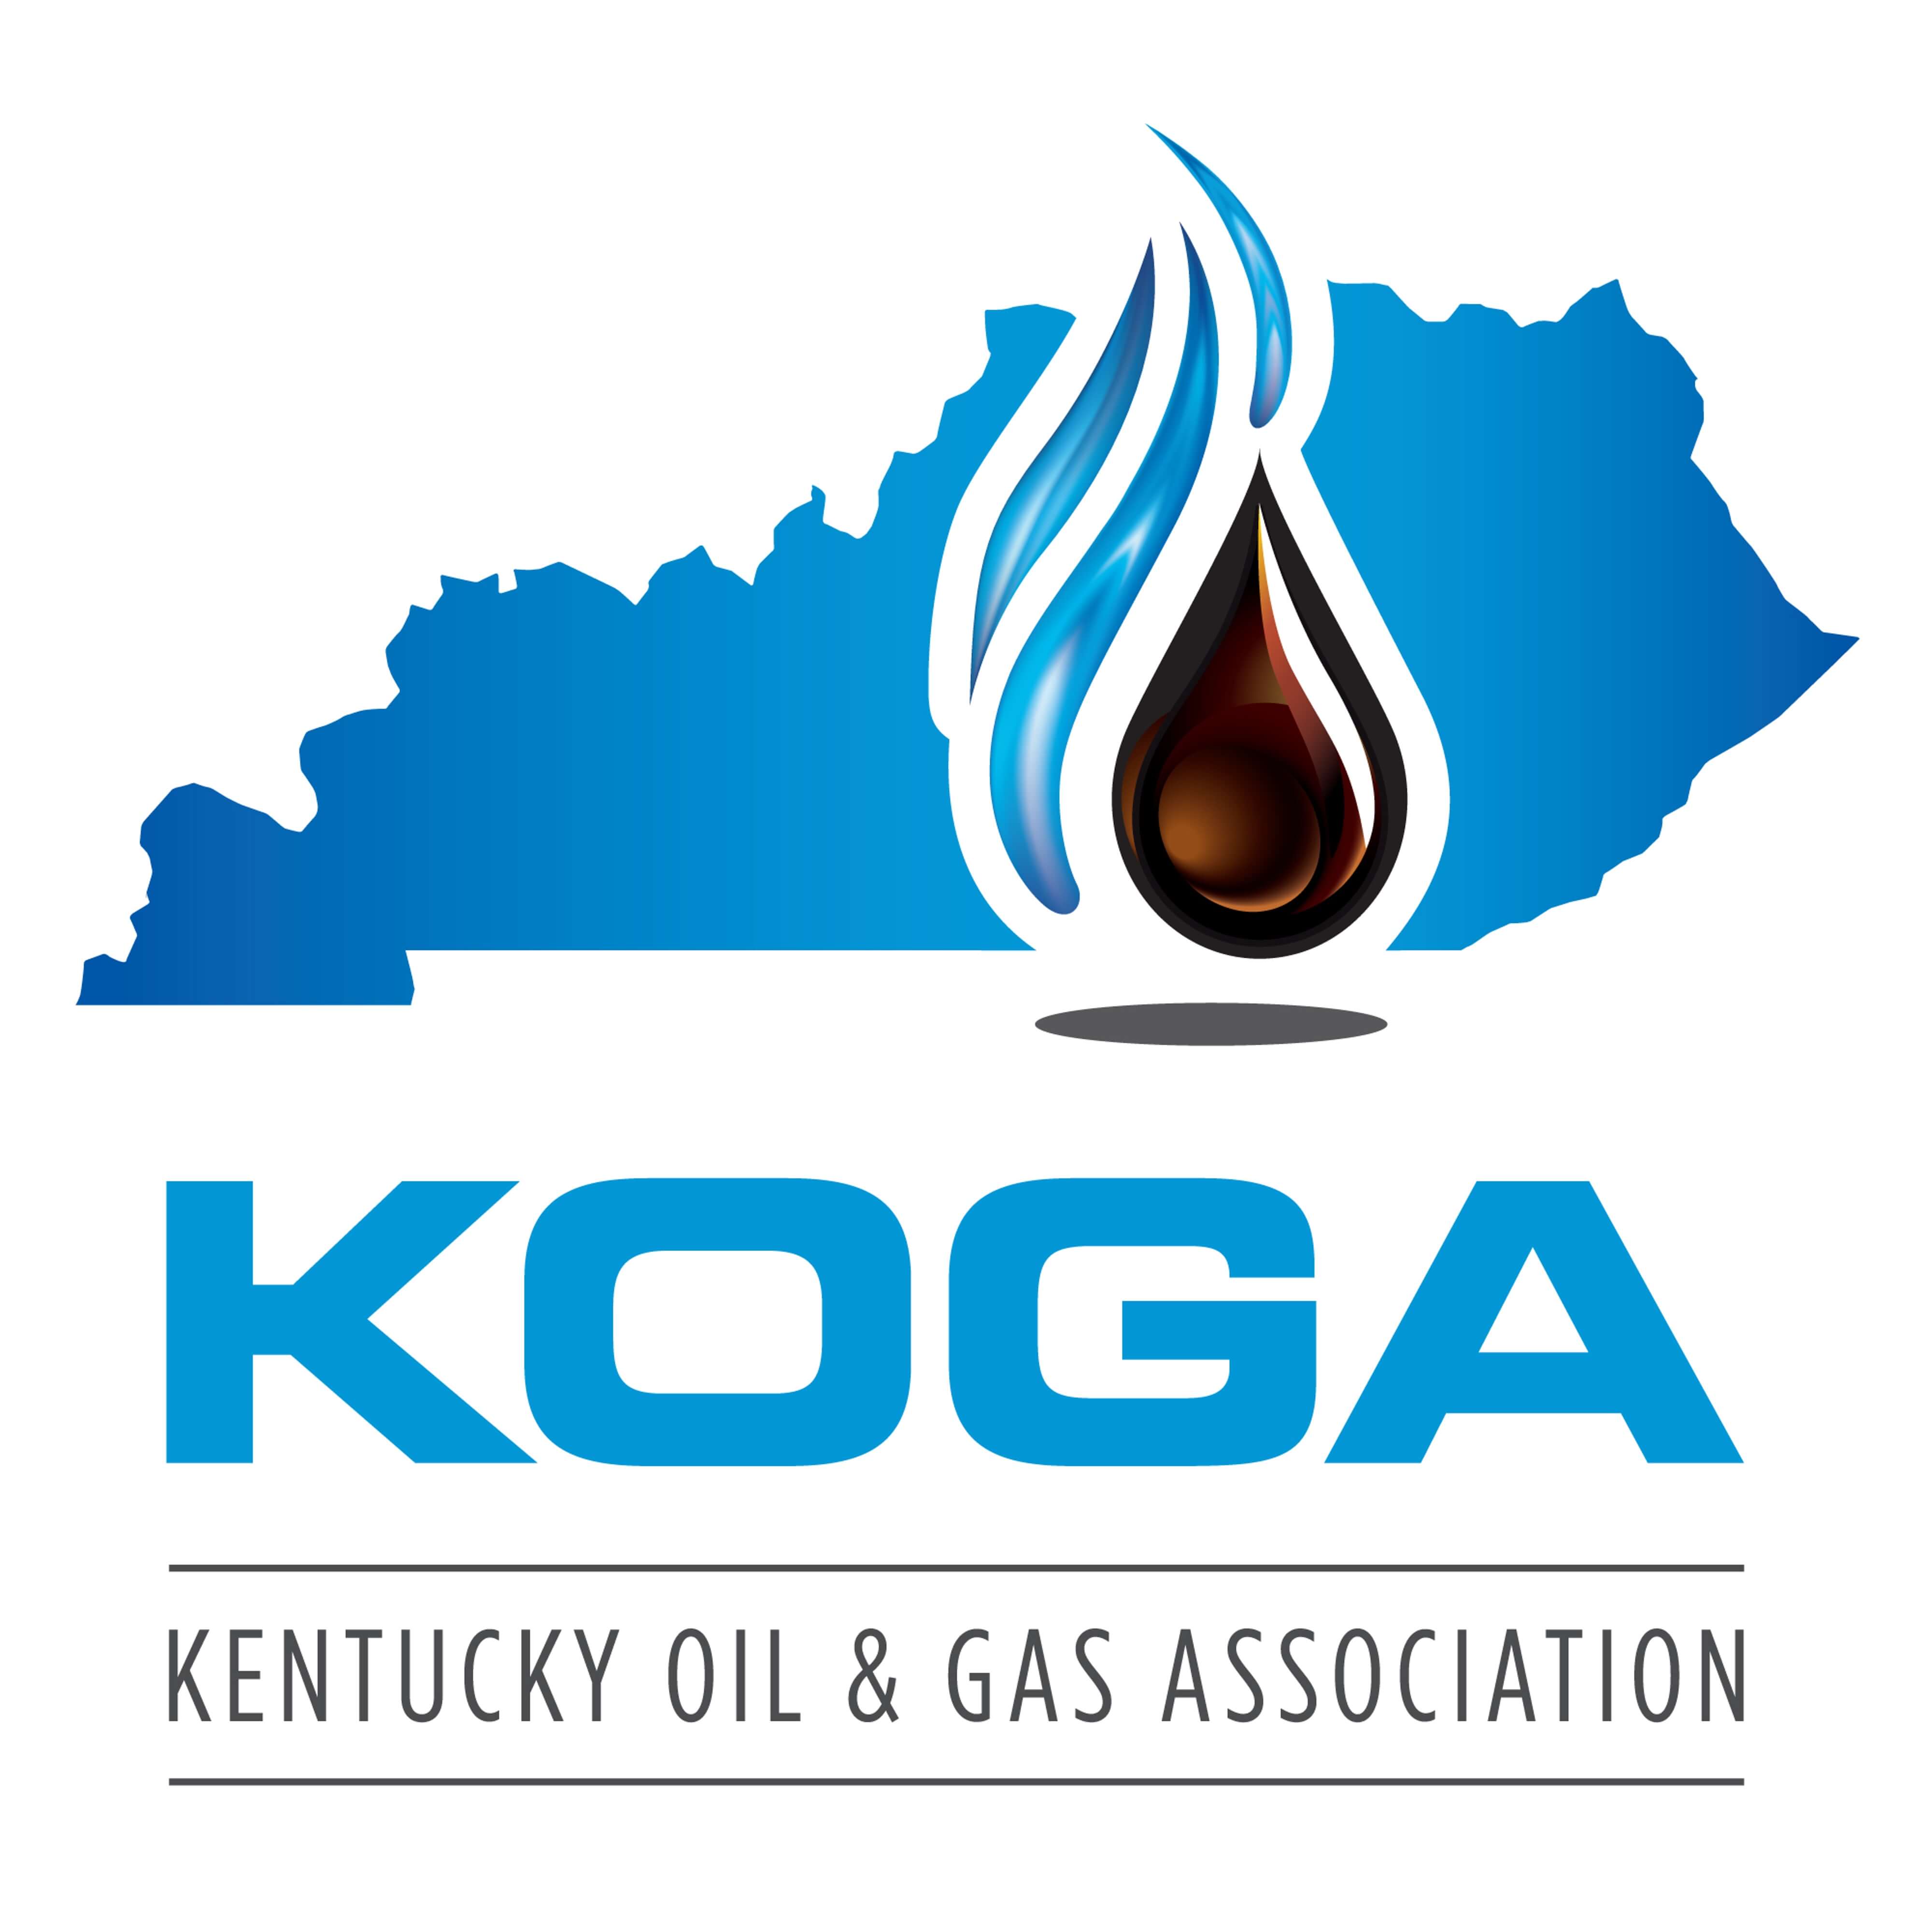 Kentucky Oil & Gas Association